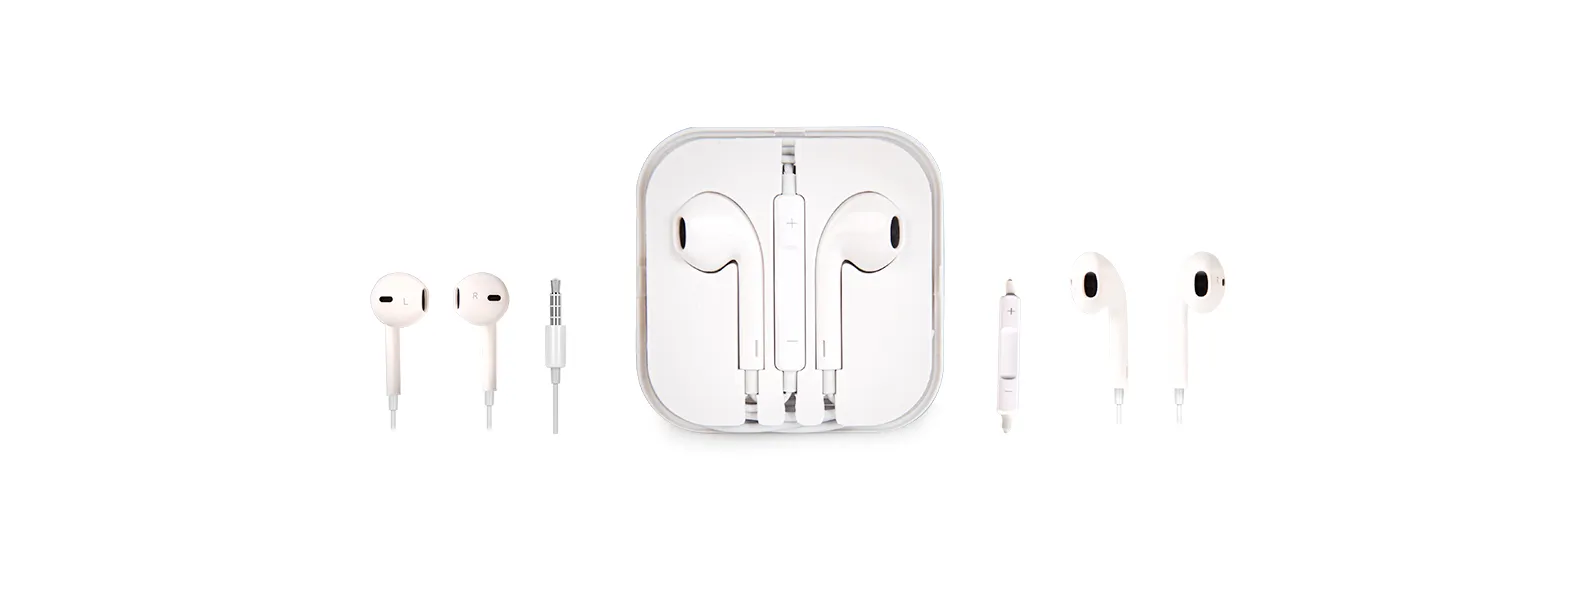 Fone de ouvido branco com microfone, controle de volume e estojo plástico. Conta com cabo de 1m e conector 3.5mm (P2, o mais comum para celulares, tablets e etc). Obs: os controles de volume funcionam apenas para celulares da Apple.